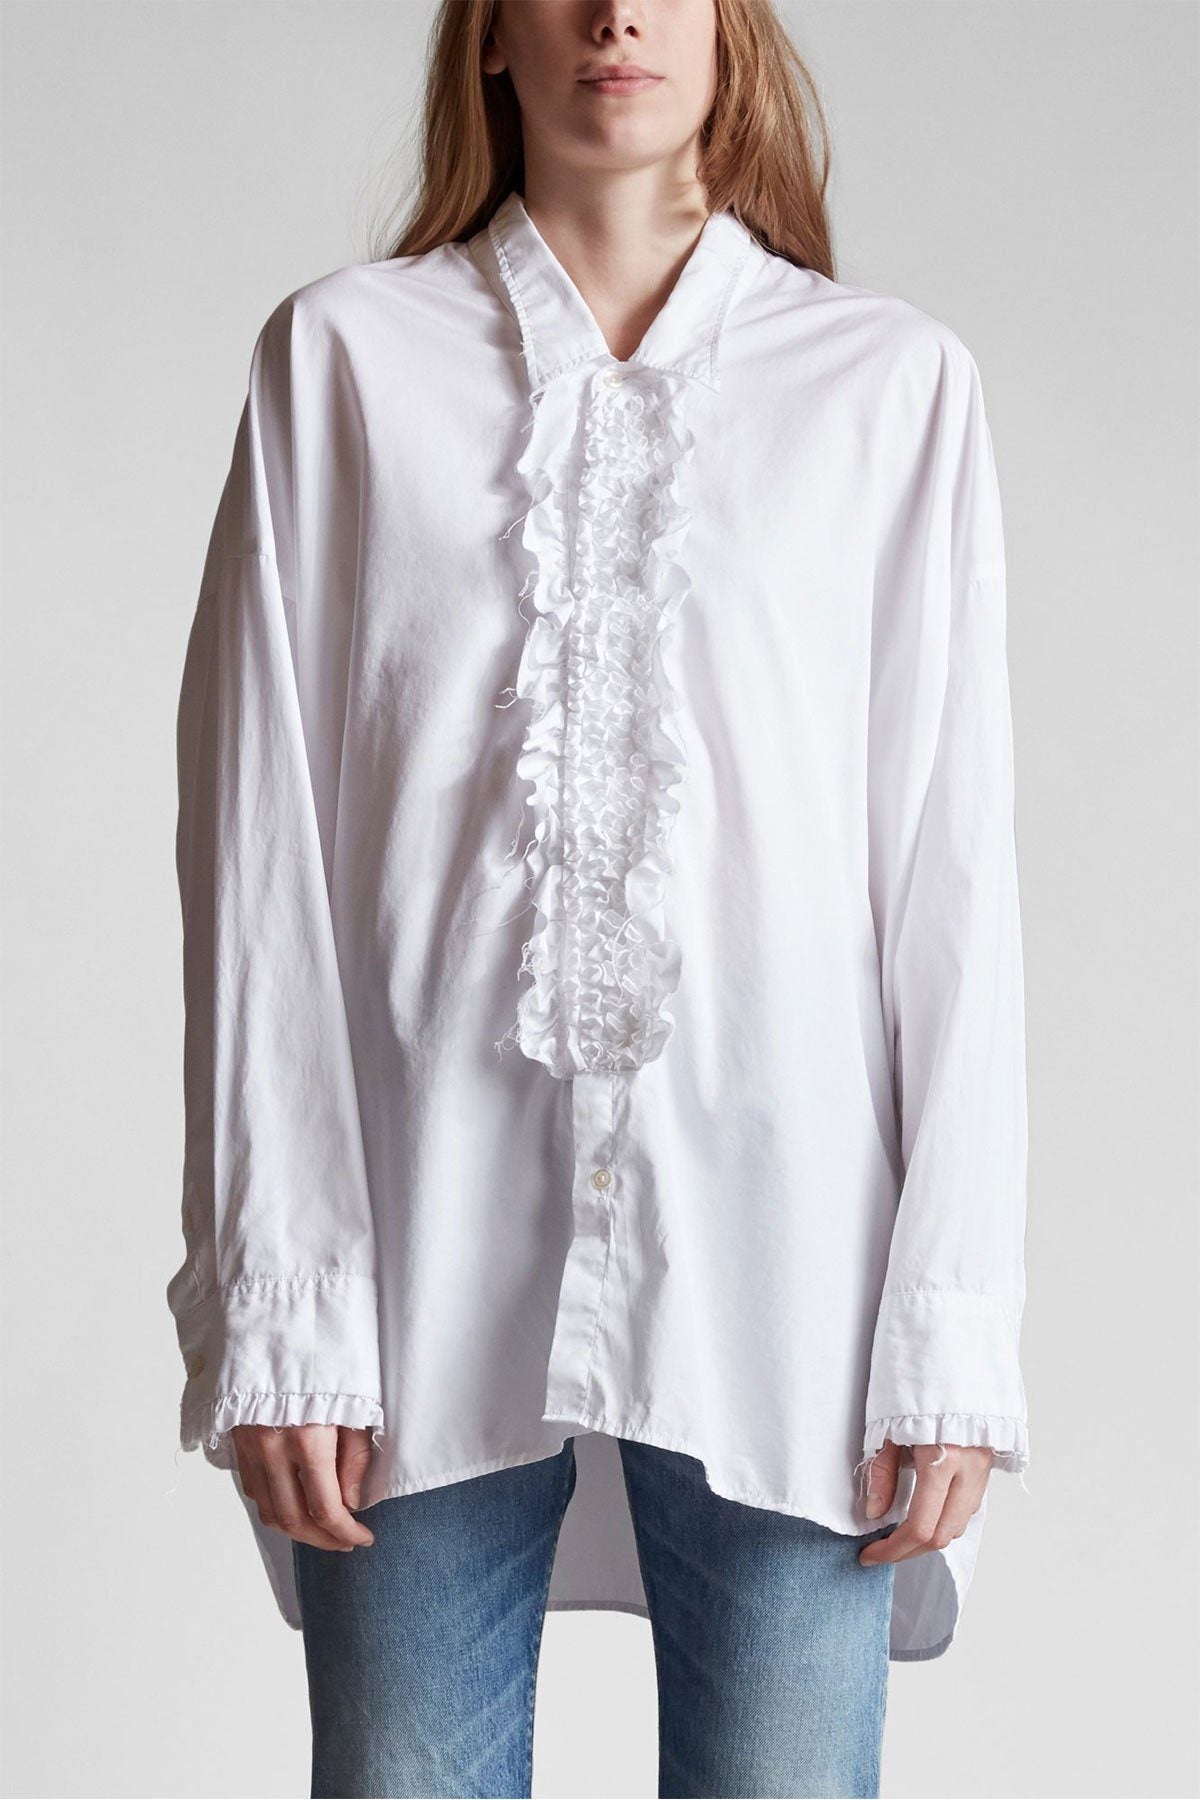 Drop Neck Tuxedo Shirt White - shop-olivia.com